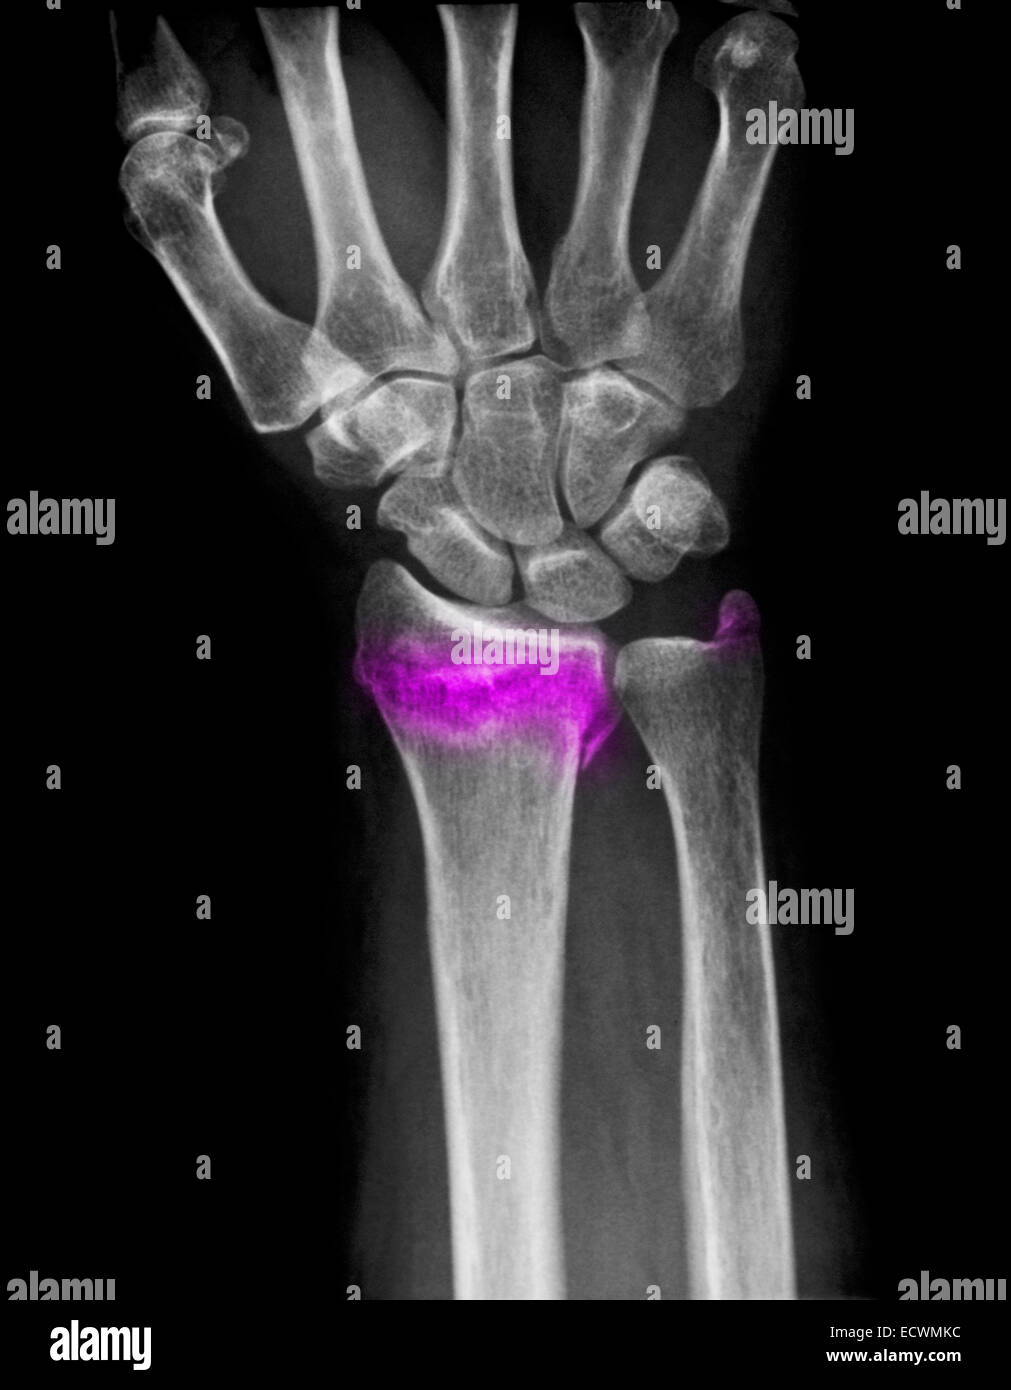 Muñeca X-ray mostrando una fractura distal del radio y cúbito. Foto de stock